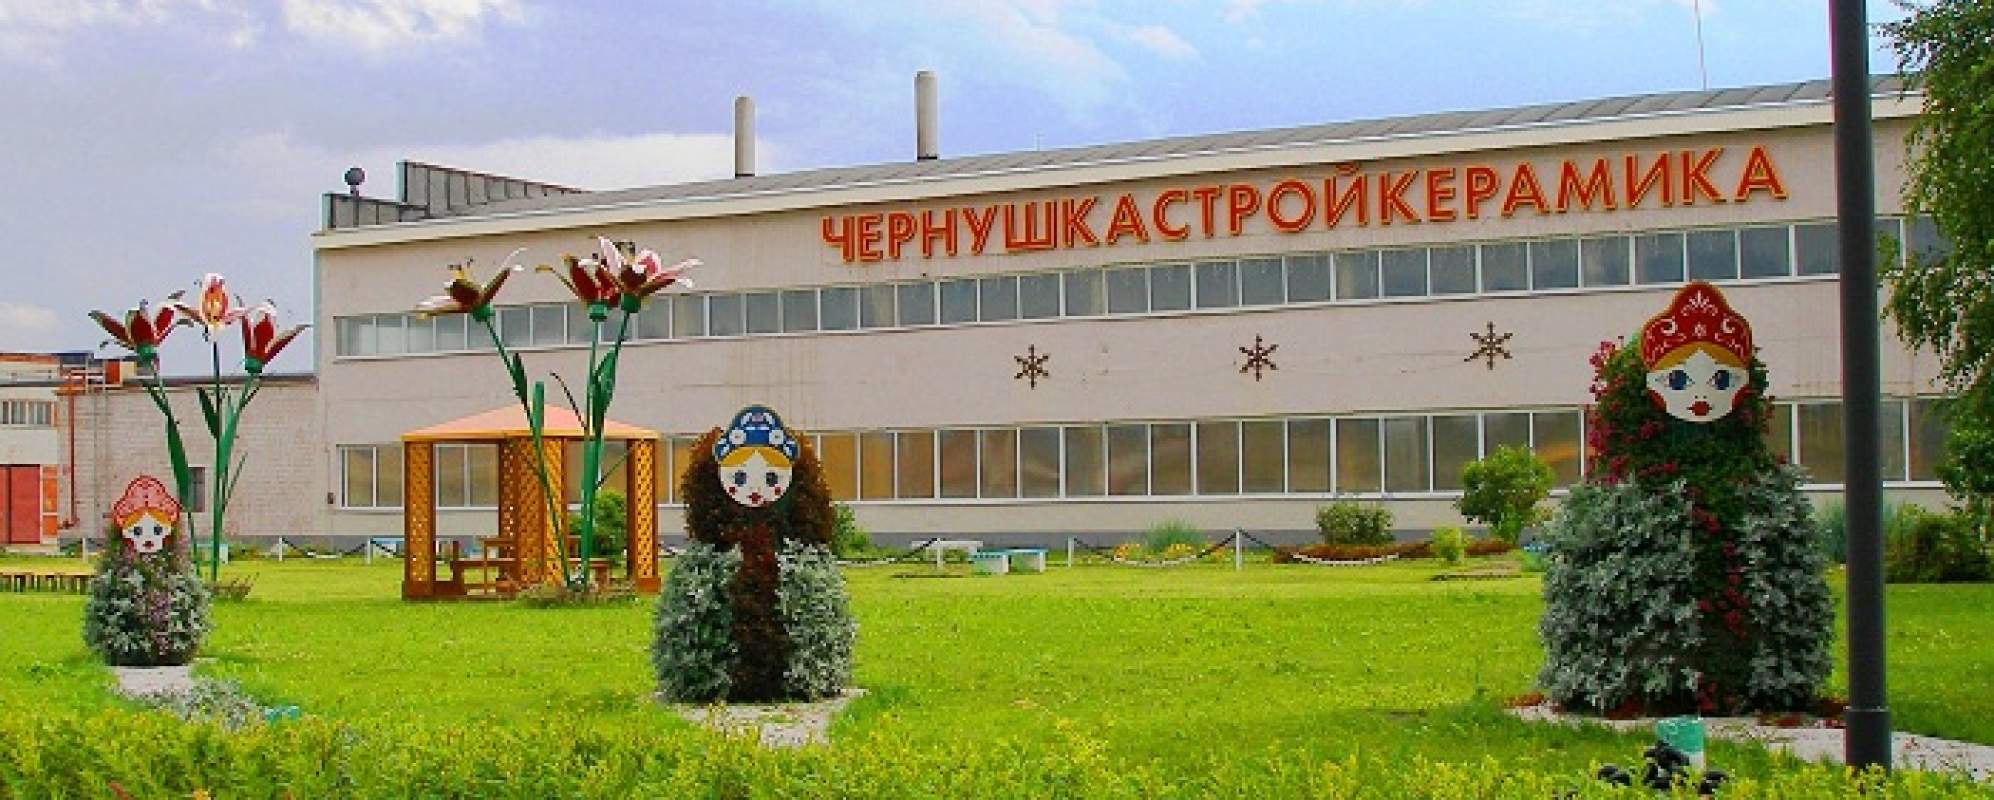 Чернушка Стройкерамика кирпичный завод